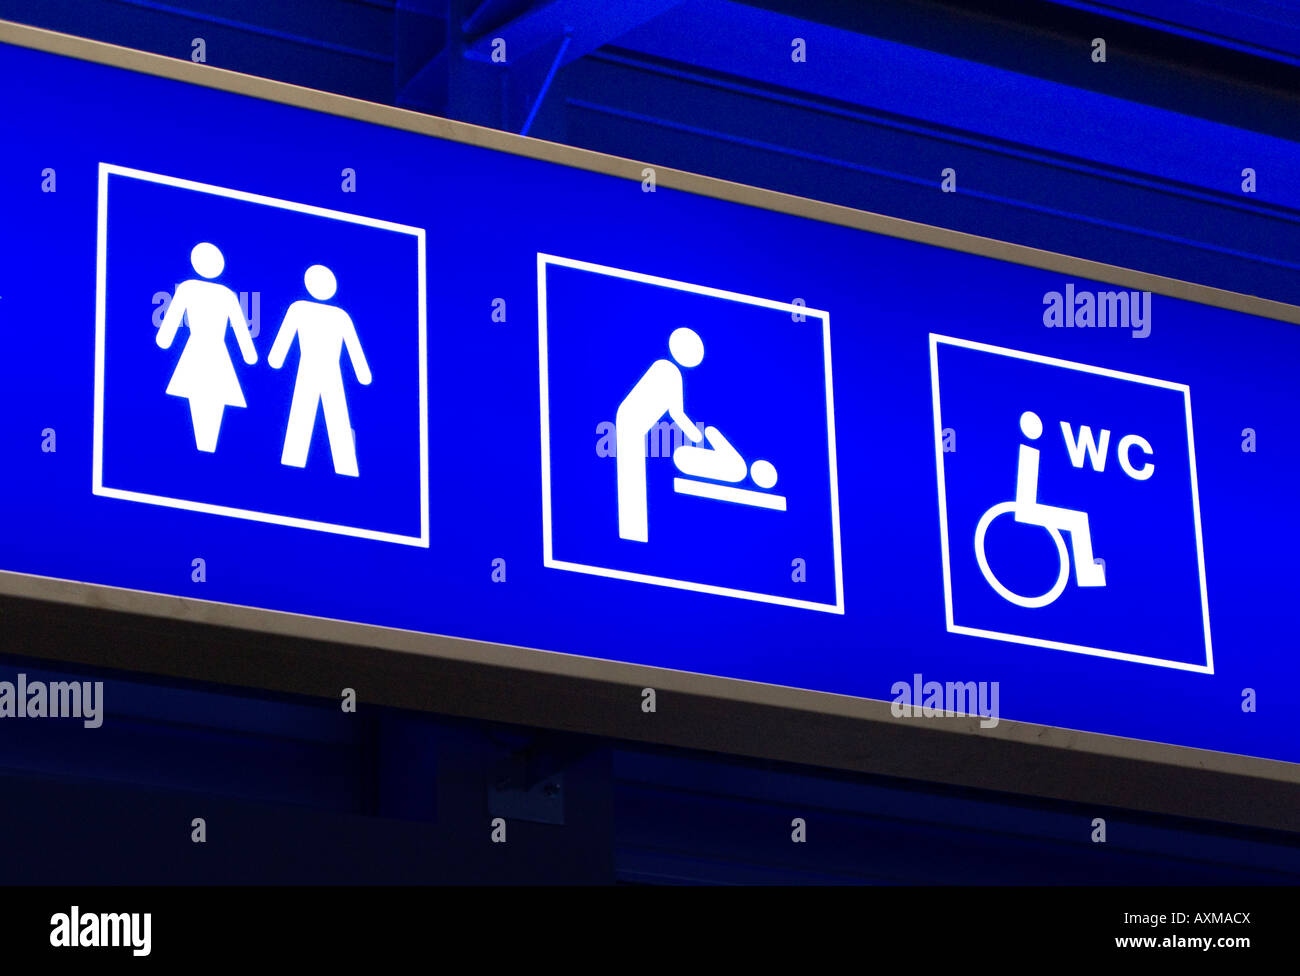 Schild mit verschiedenen WC-Anlagen am Flughafen. Stockfoto